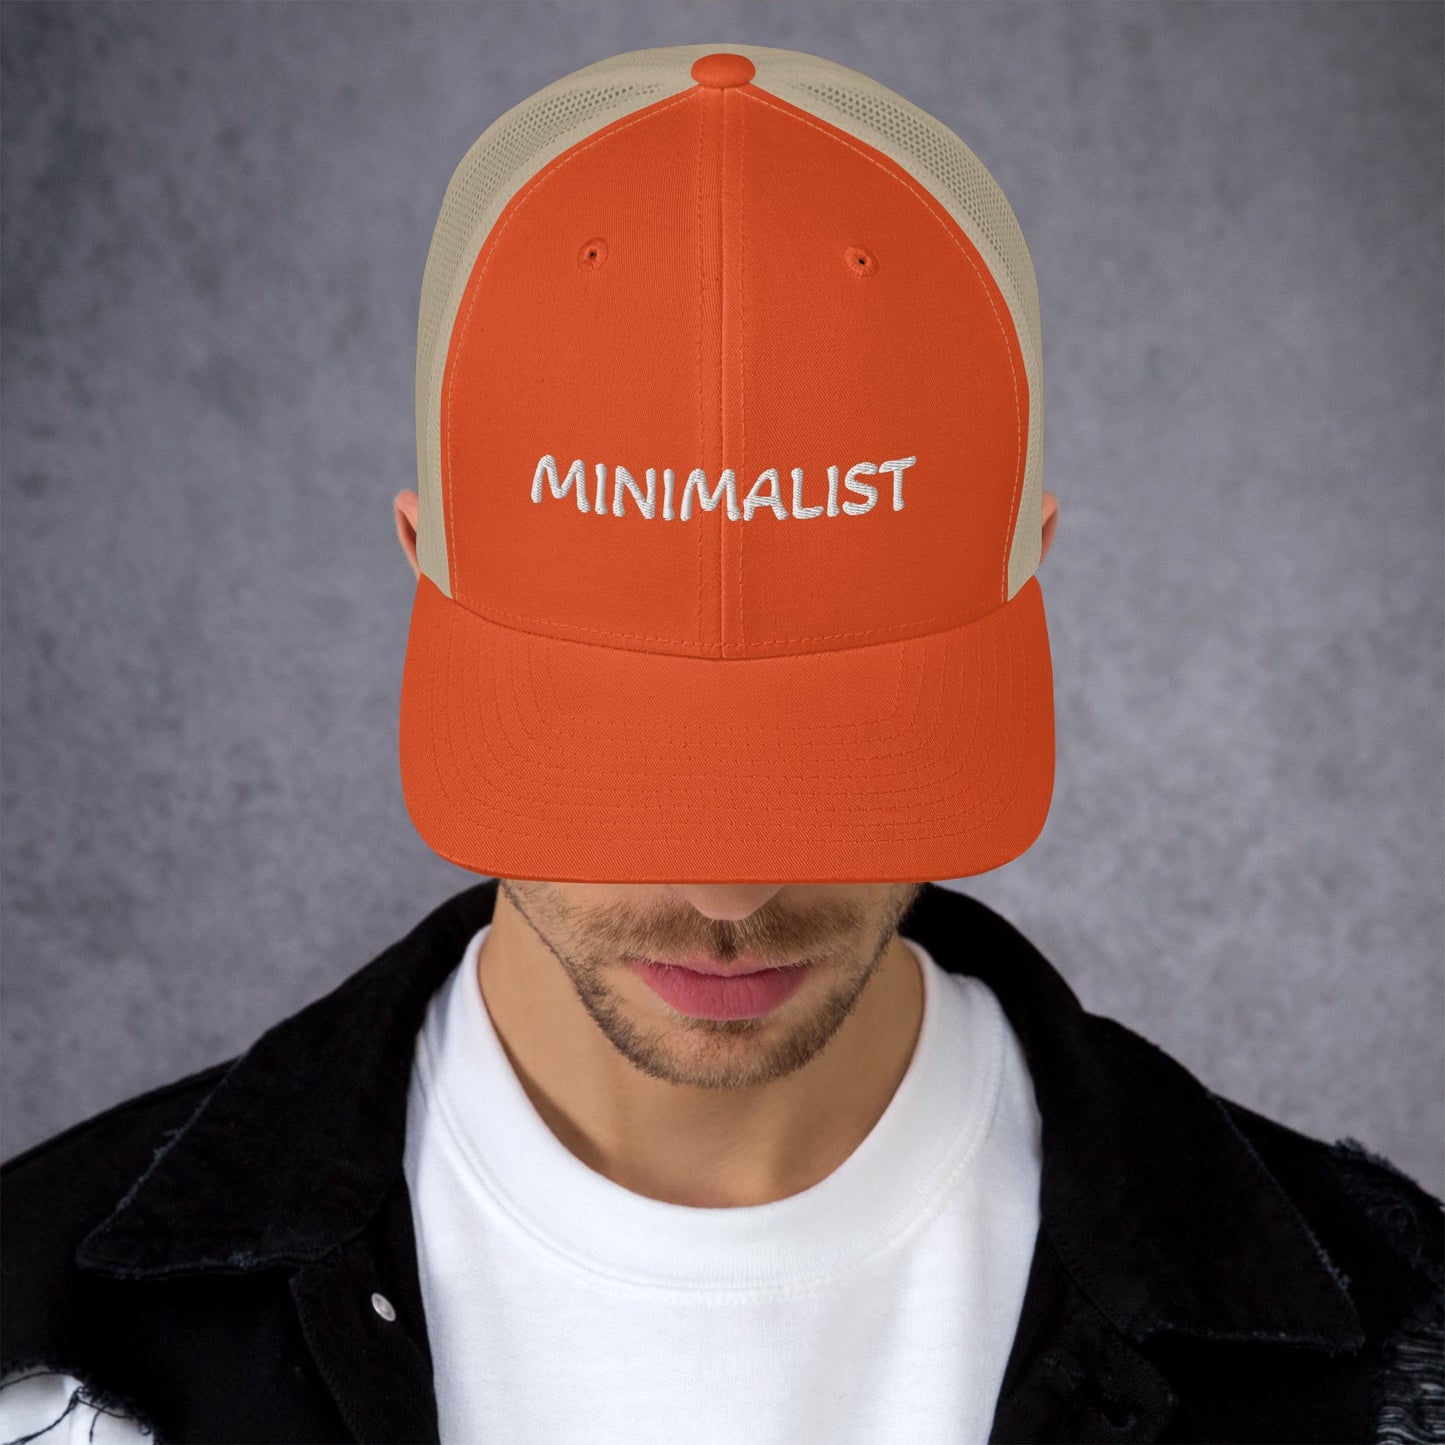 MINIMALIST Design - Embroidered Trucker Cap